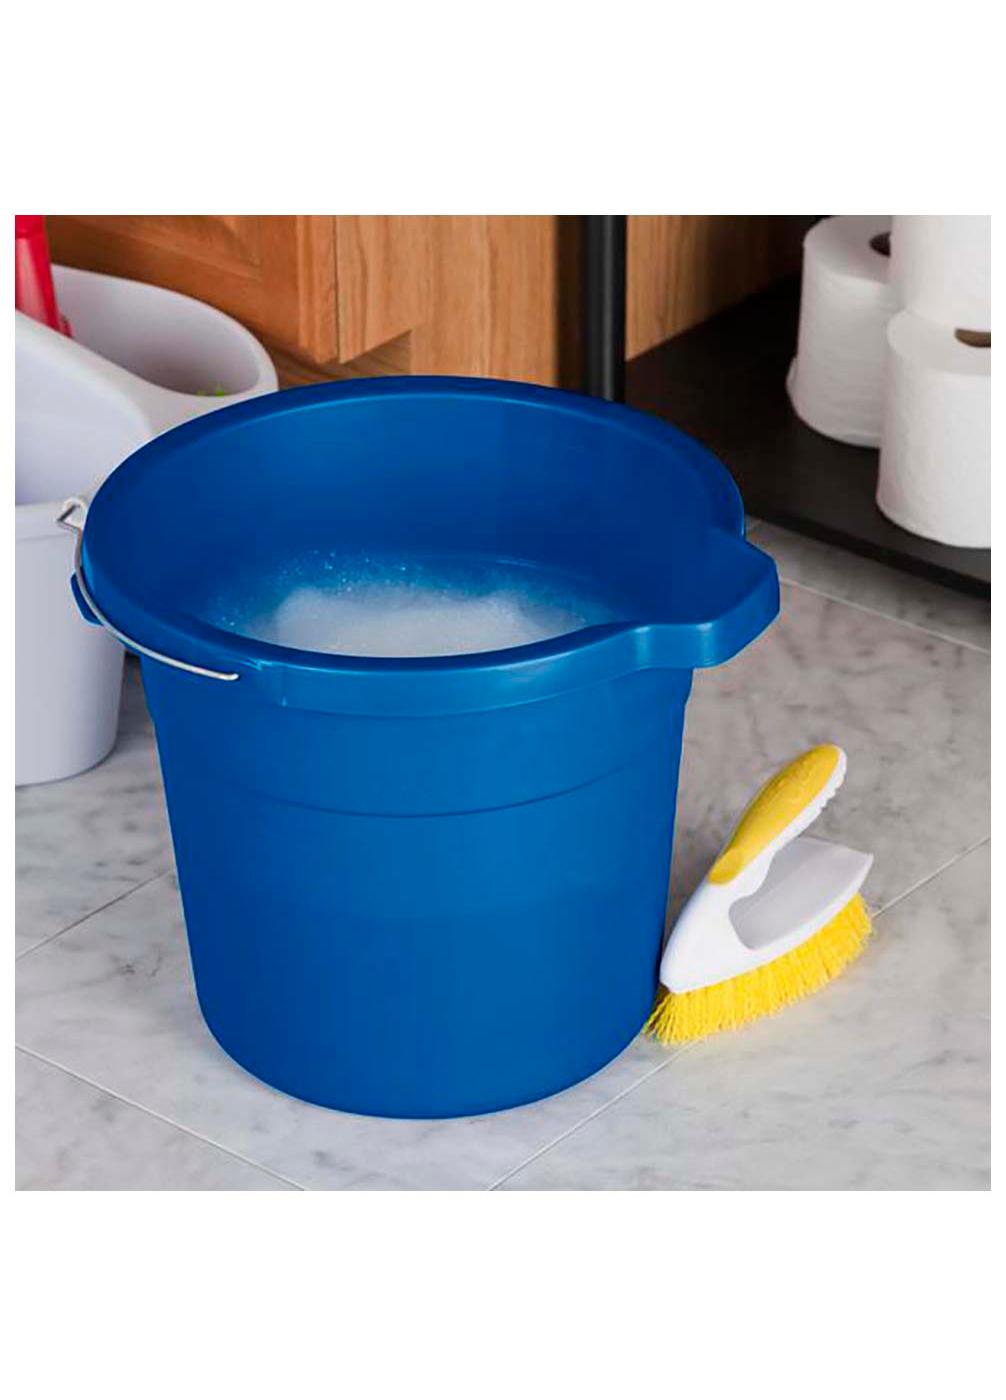 Blue Pour Spout Bucket Lid